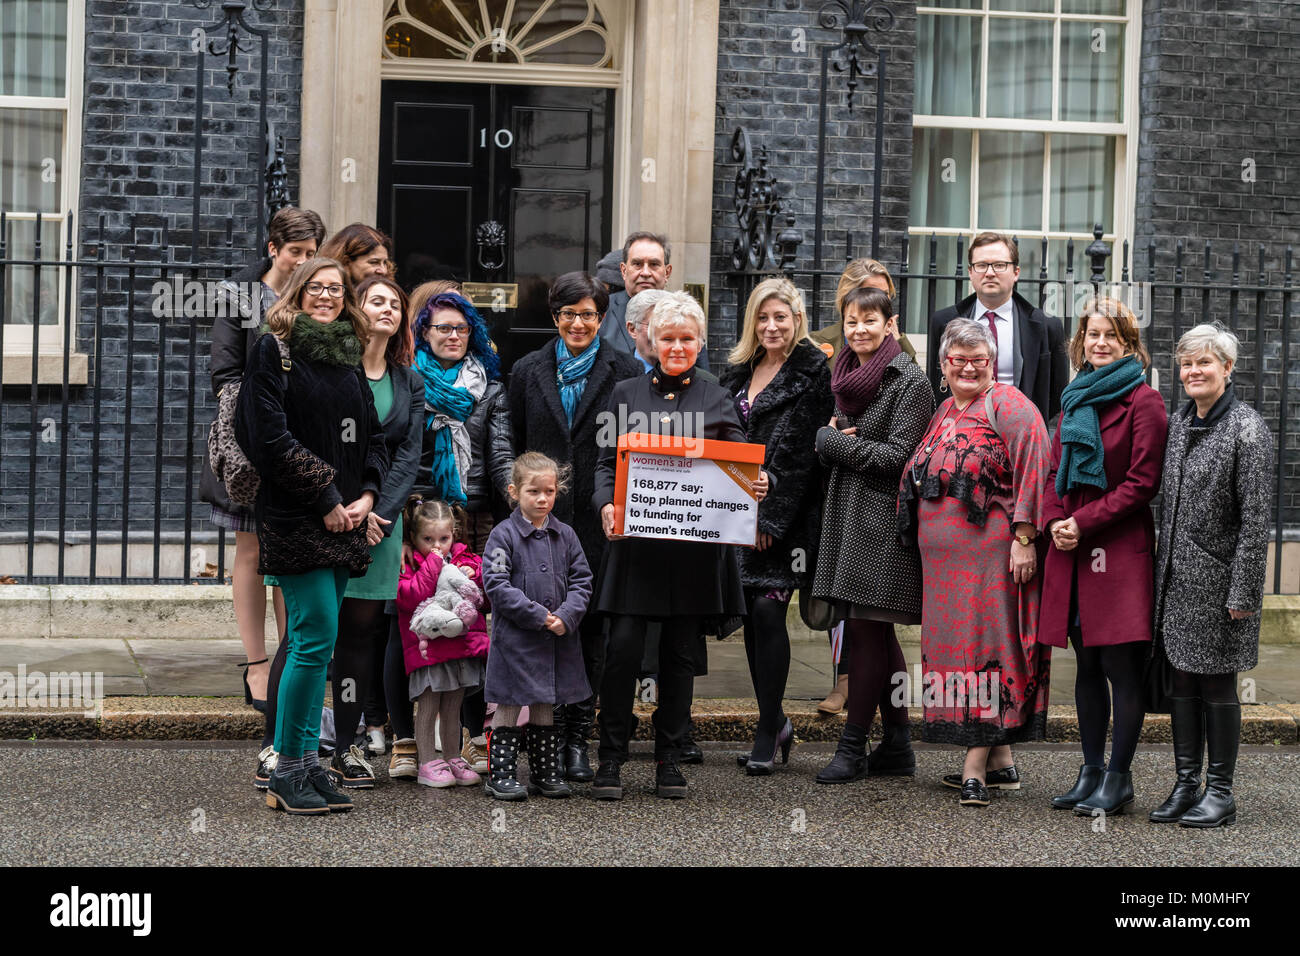 London, 23. Januar 2018, Dame Julie Walters, Schauspielerin und Autorin kommt in Downing Street ist eine Frau Hilfe Petition gegen die geplanten Änderungen bei der Finanzierung für frauenhäuser Frauen zu präsentieren. Credit: Ian Davidson/Alamy leben Nachrichten Stockfoto